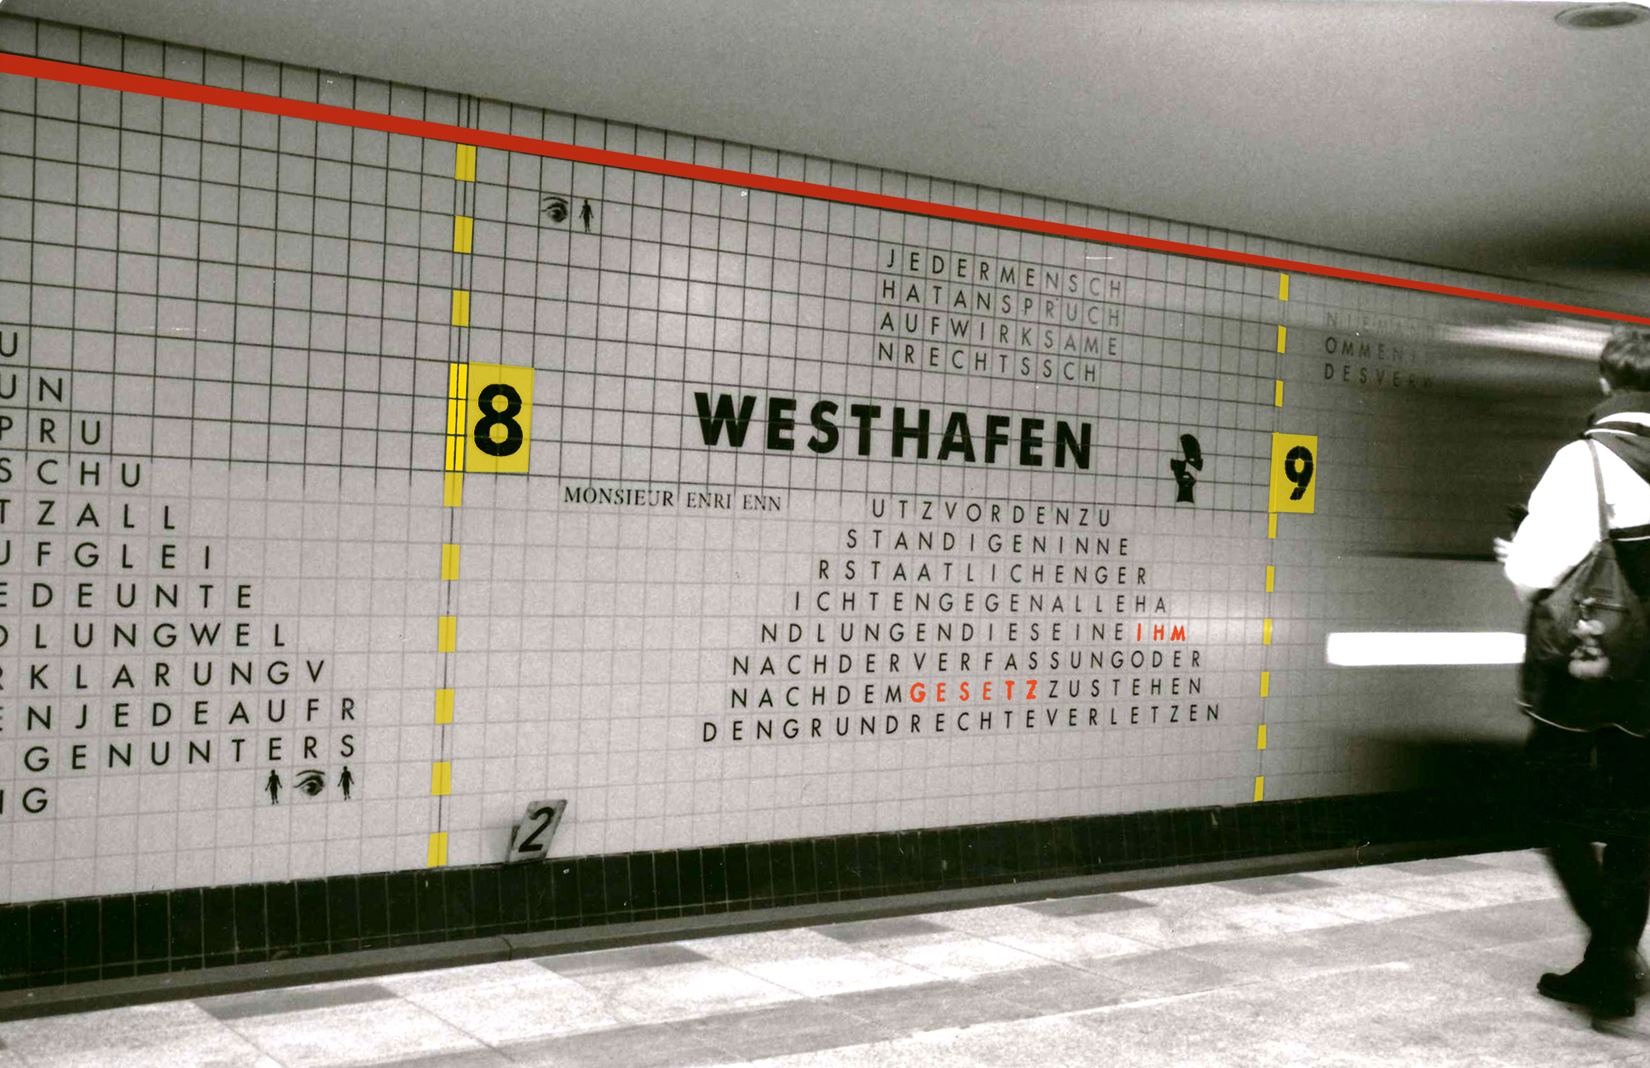 Westhafen Station